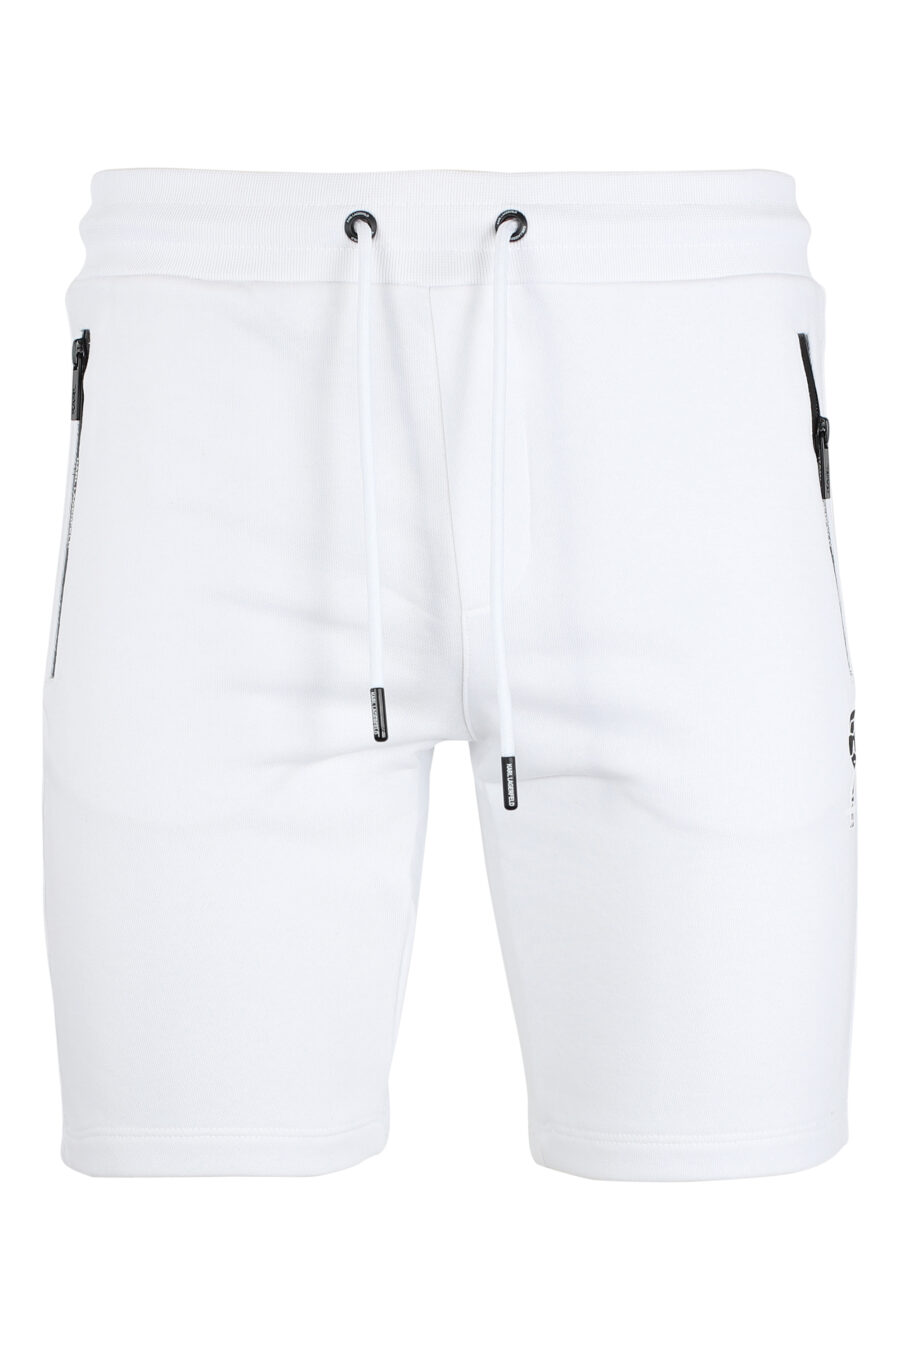 Calças de fato de treino curtas brancas com minilogo "karl" em silhueta preta - IMG 9514